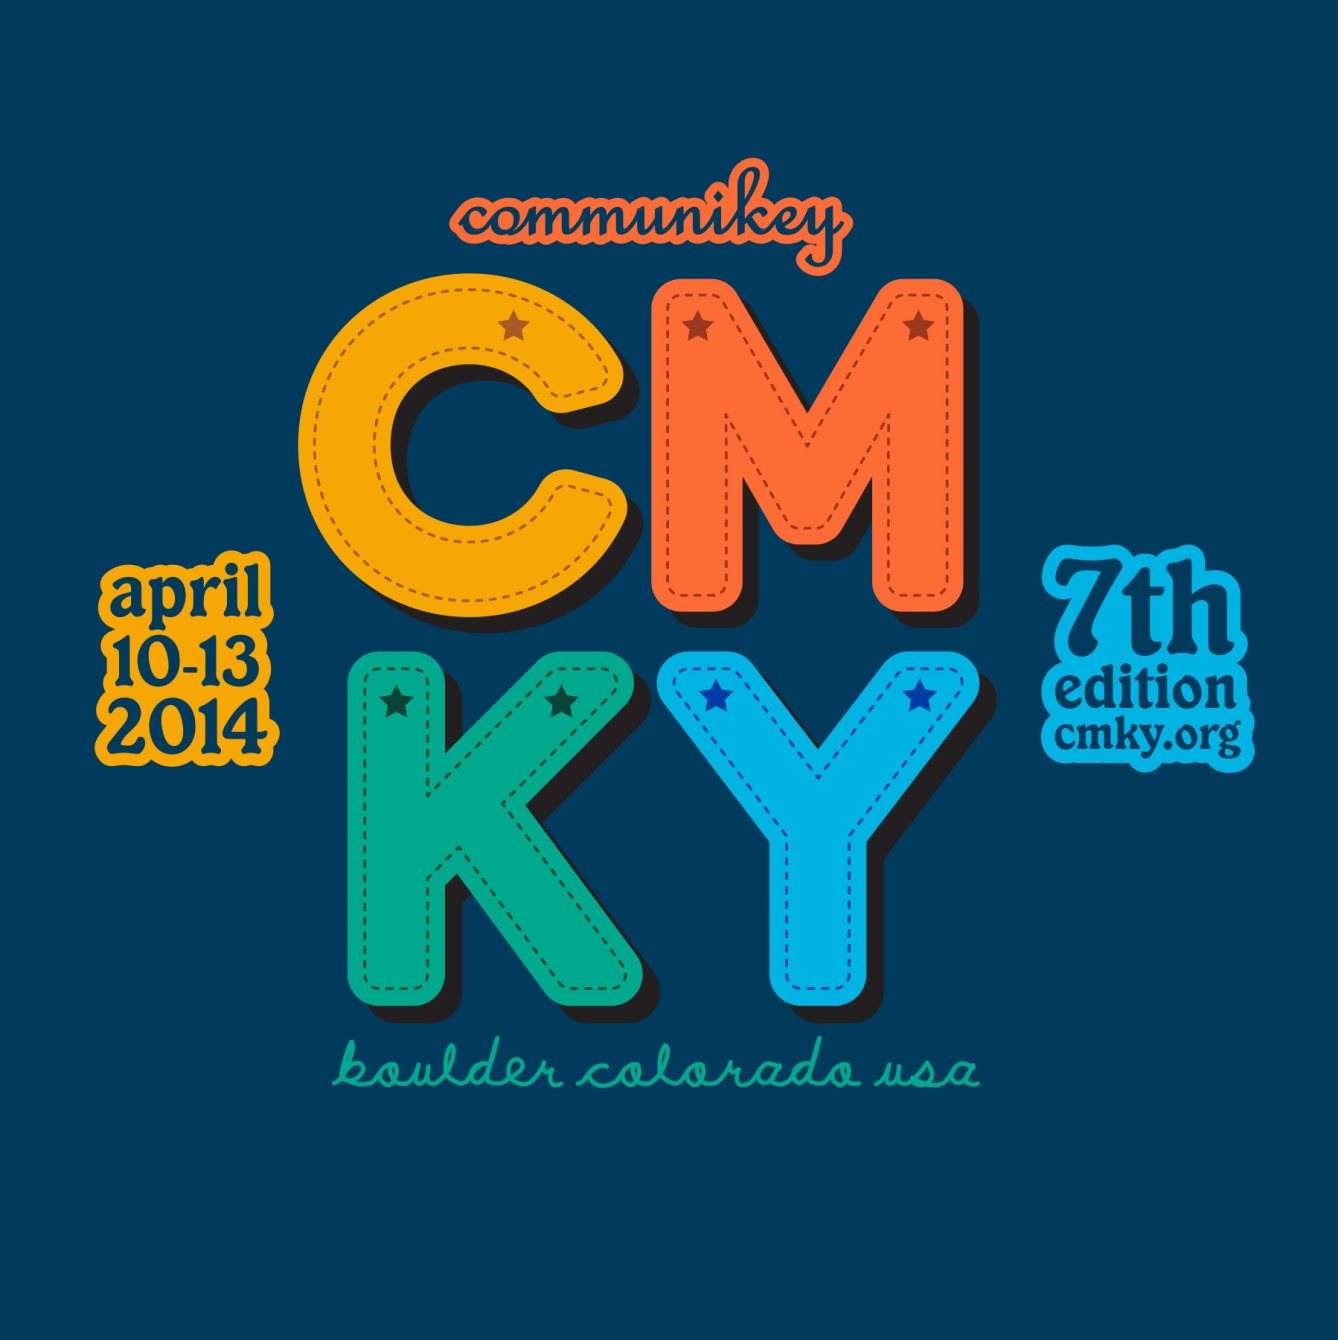 Communikey Festival: 7th Edition - Página frontal